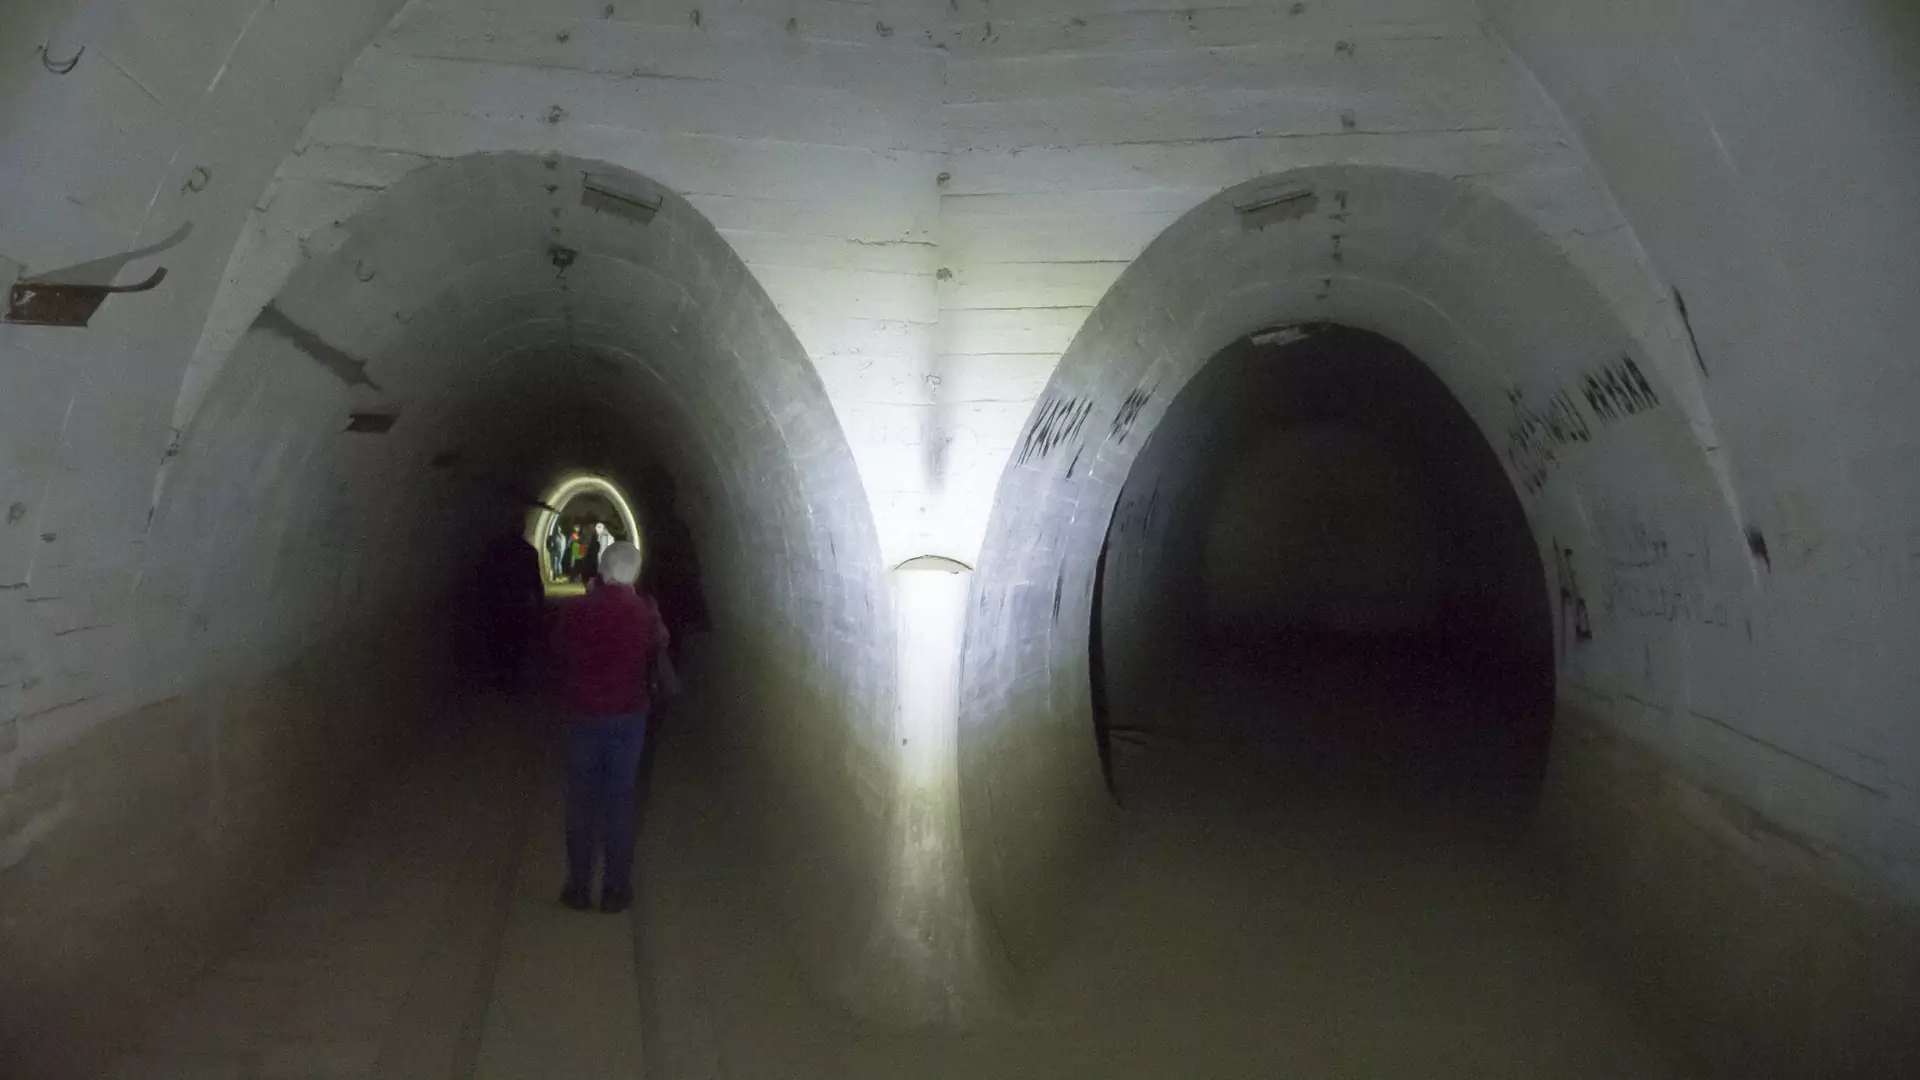 Tunele widmo w Polsce. Podziemna trasa rowerowa i ukryte miasto dla 20 tys. osób